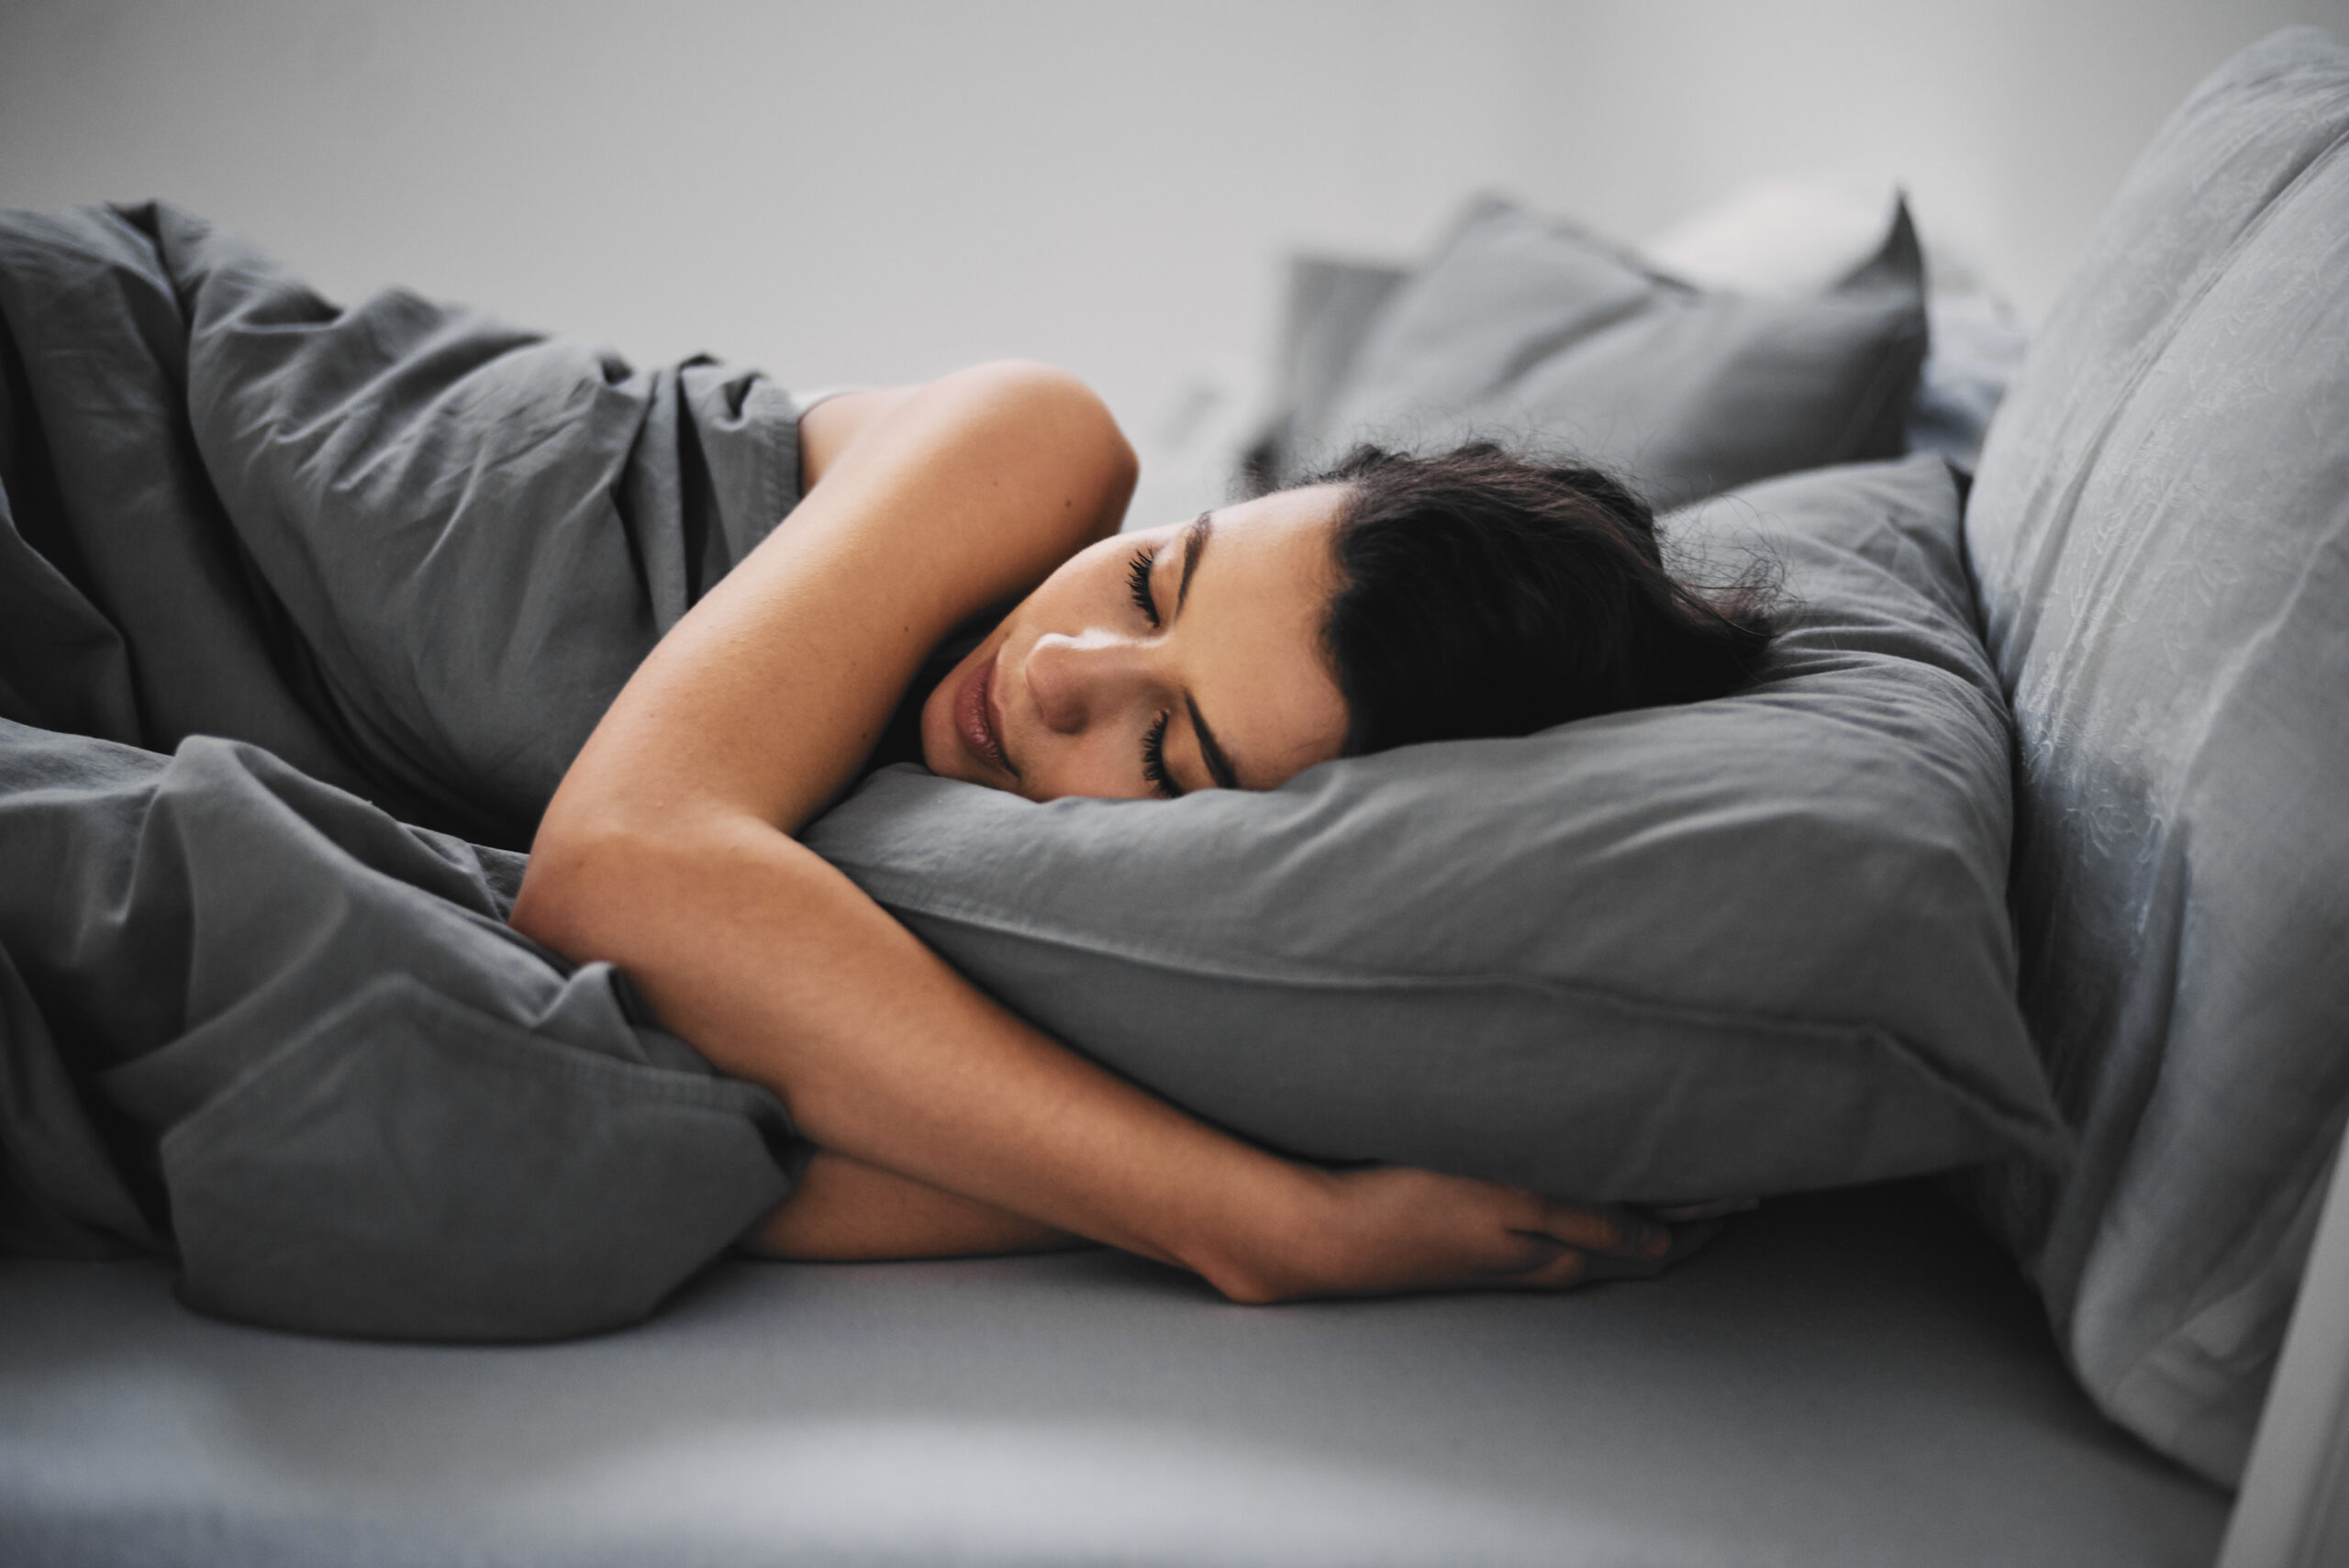 Синдром периодических движений конечностями во сне (PLMD) и синдром беспокойных ног (RLS)